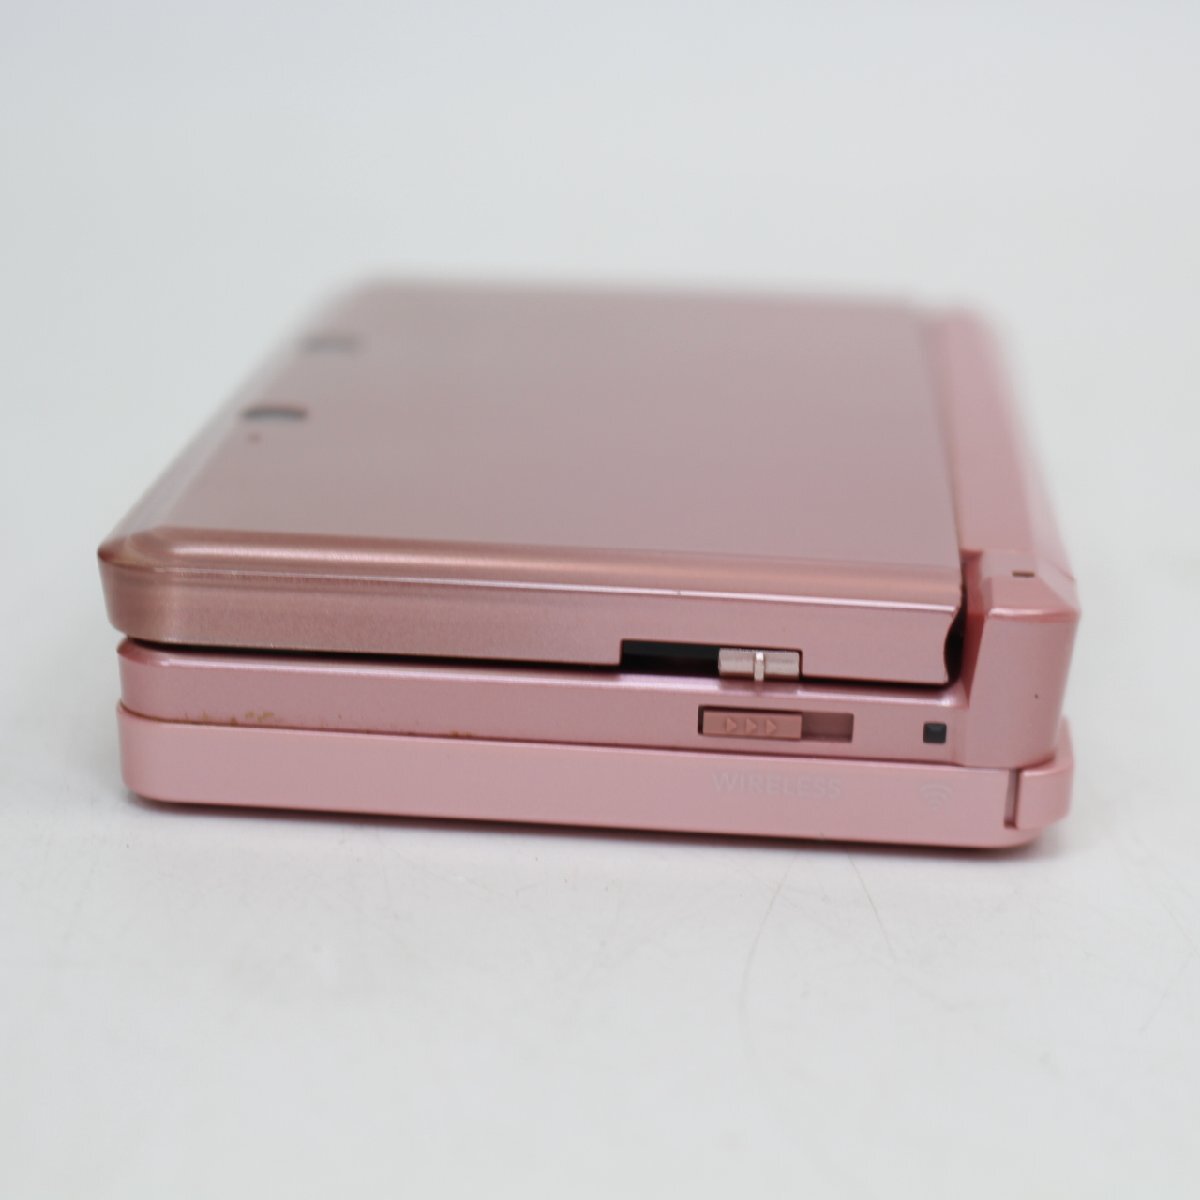 293)【1円スタート♪】NINTEND 3DS CTR-001 ニンテンドー ゲーム機 ピンク系 本体_画像7